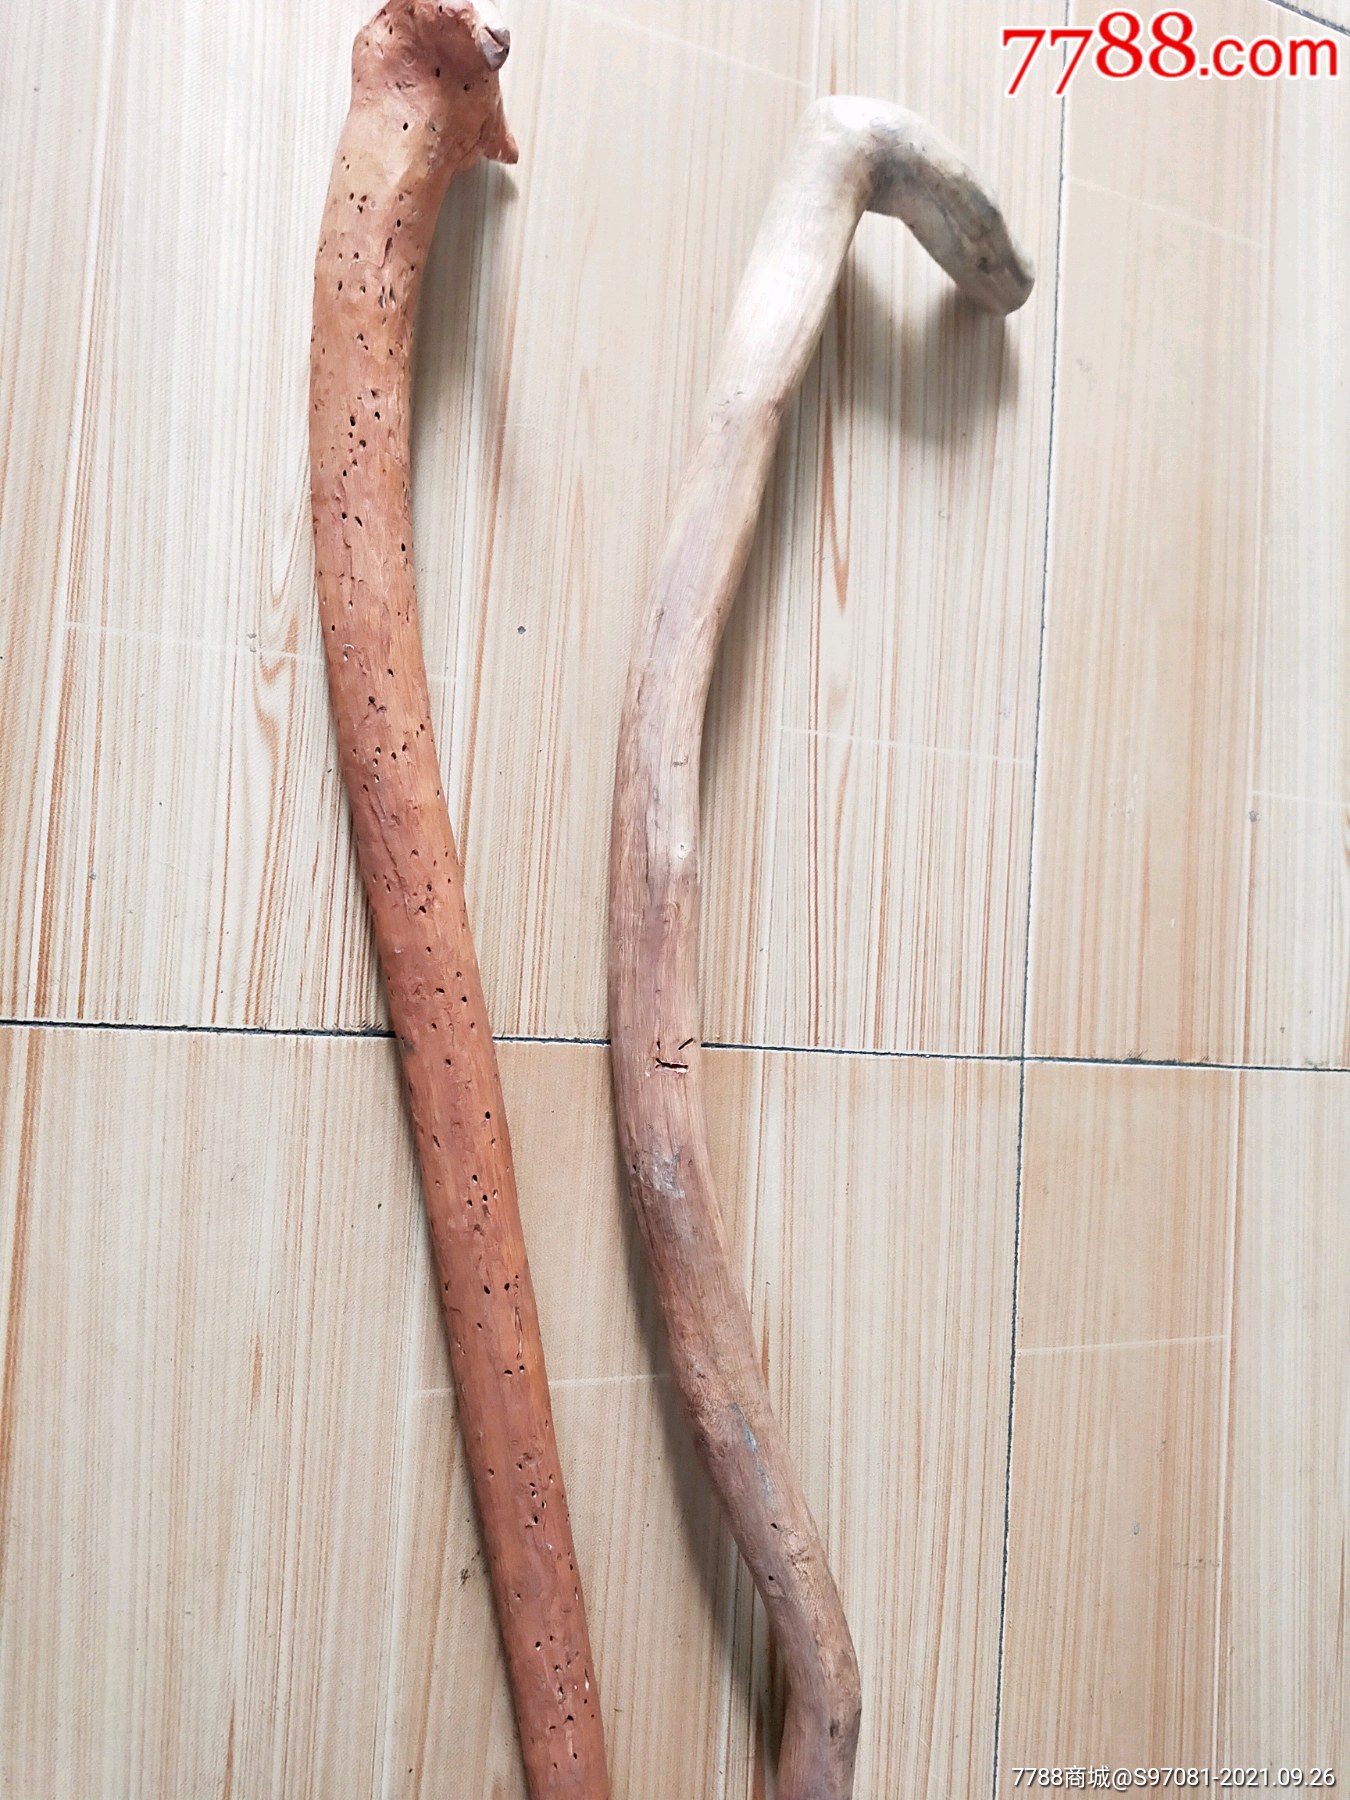 两个老木质拐杖